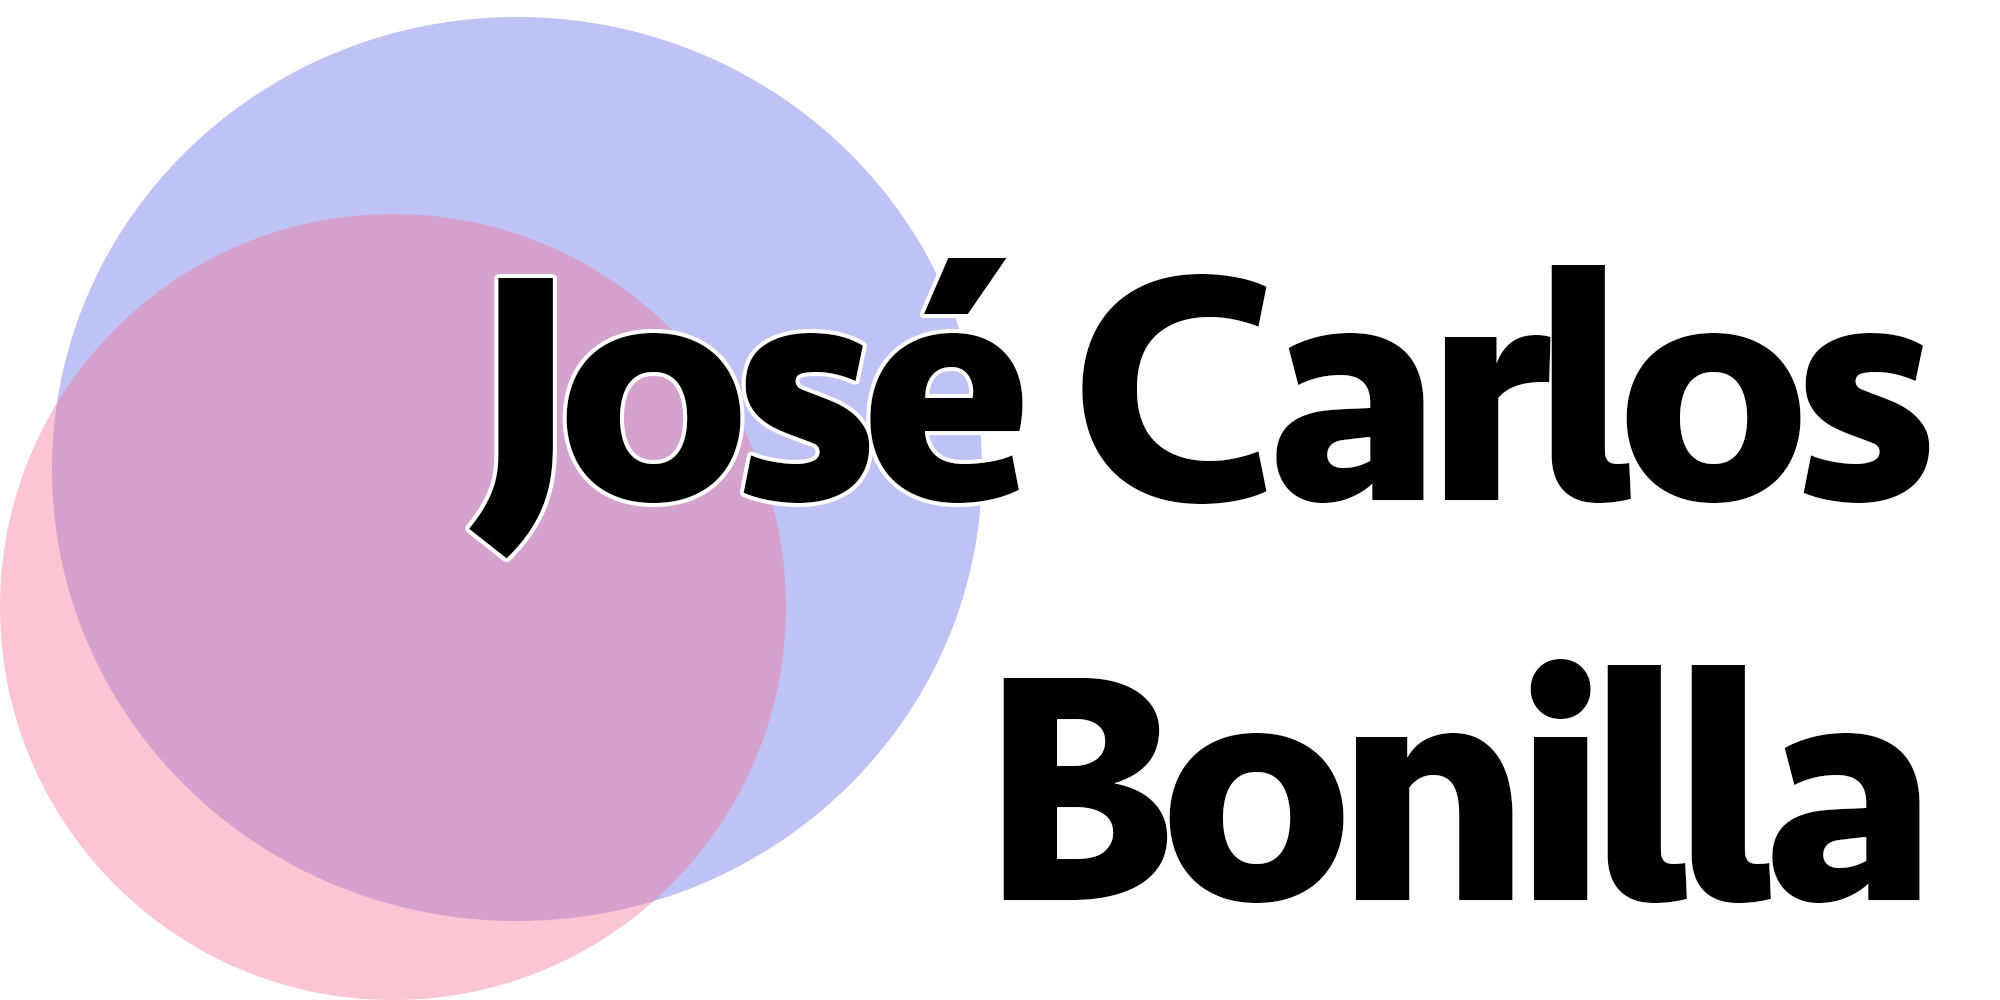 José Carlos Bonilla